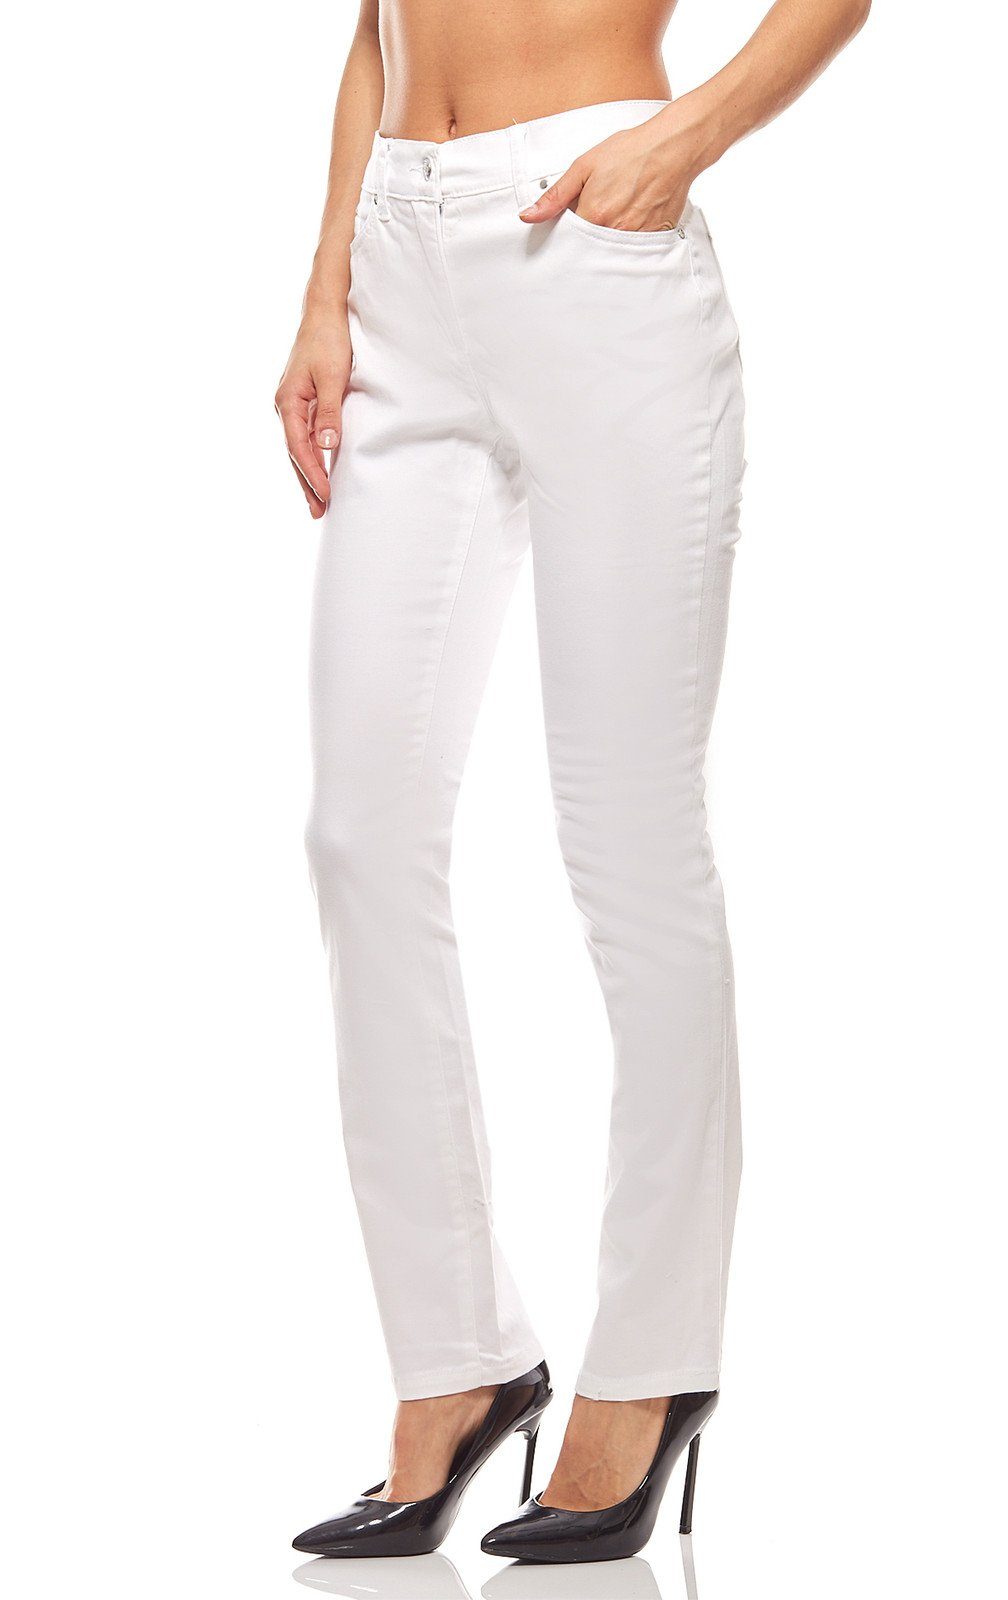 Ashley Brooke by heine Regular-fit-Jeans »Hose Schlaghose Damen Kurzgröße  Weiß ashley brooke« online kaufen | OTTO